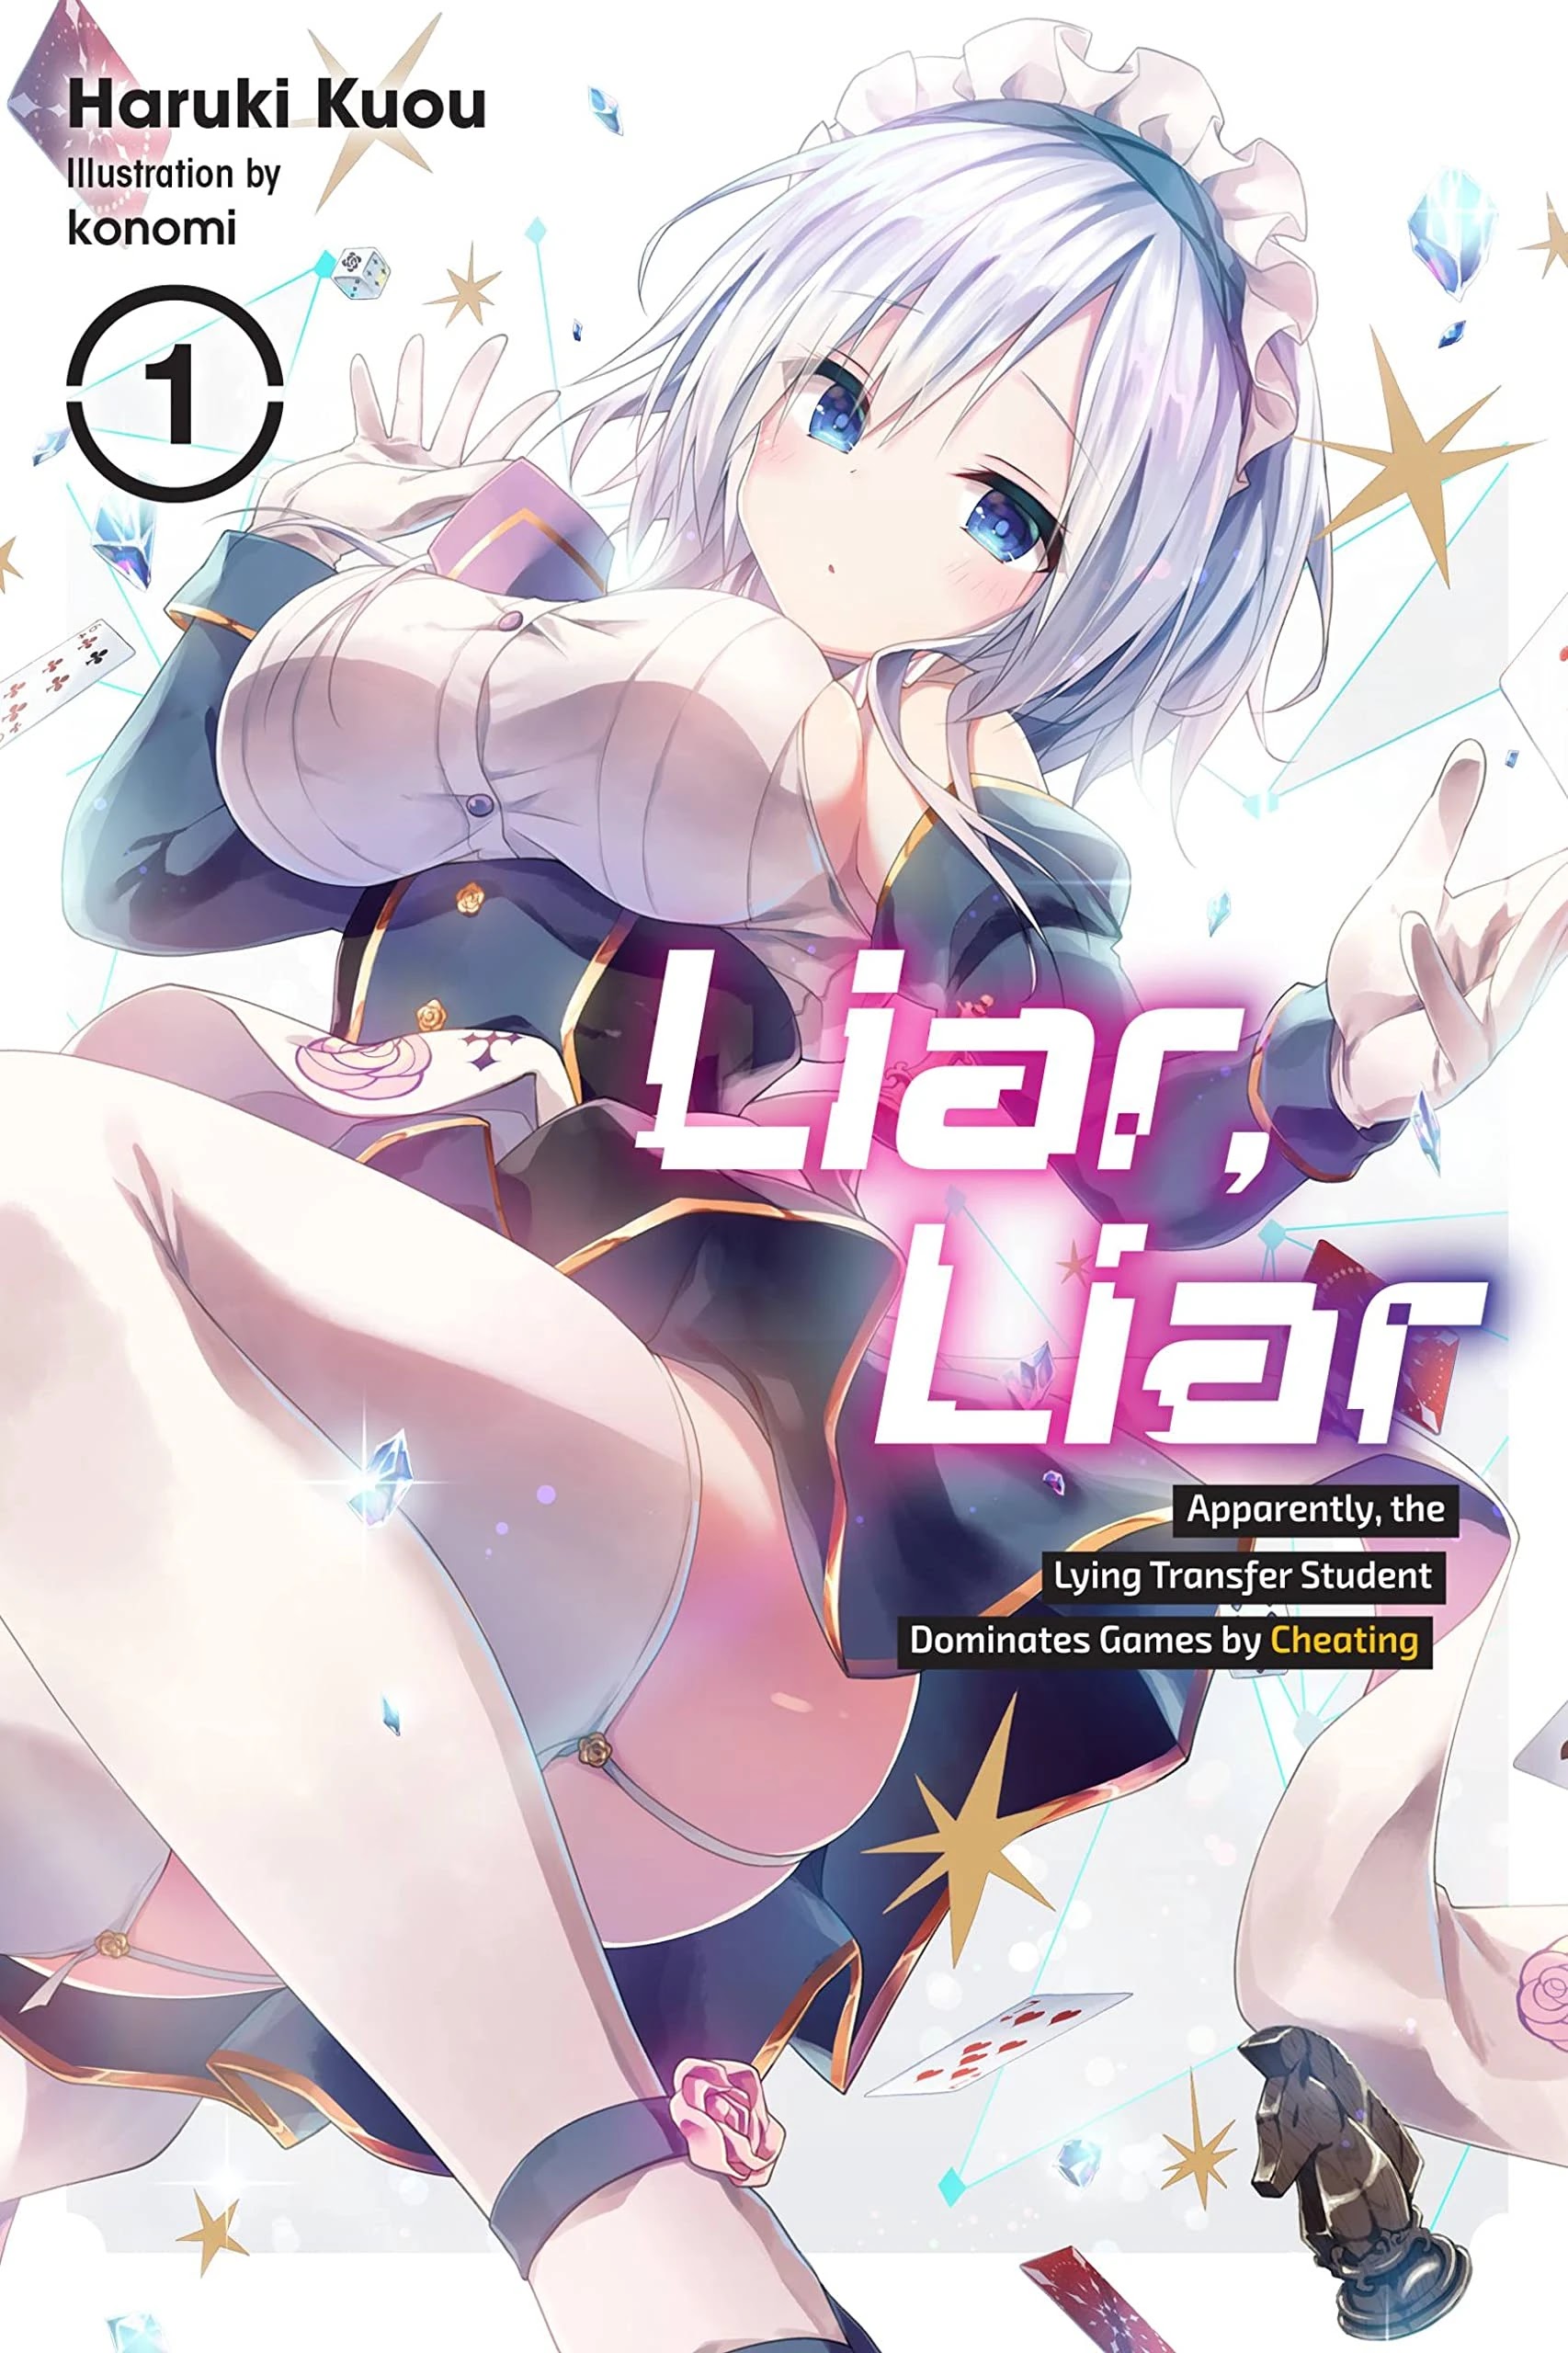 A light novel Liar Liar chega ao fim com seu 15º volume